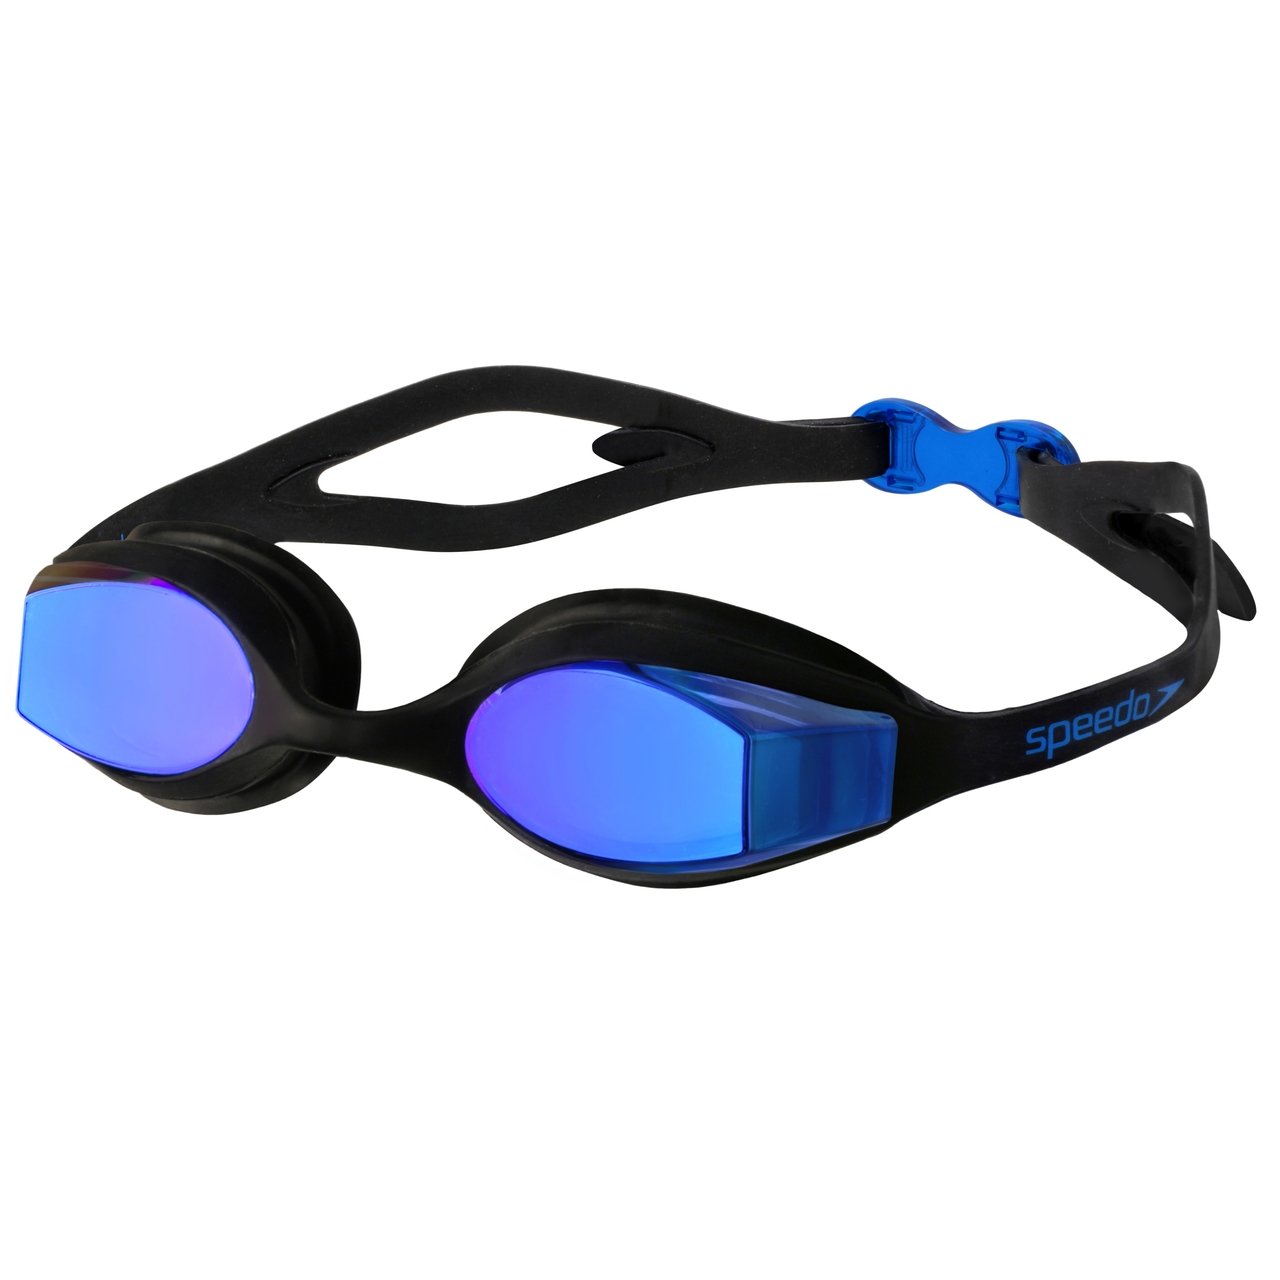 Óculos de Natação Speedo Focus Duo Vision Lens - 1